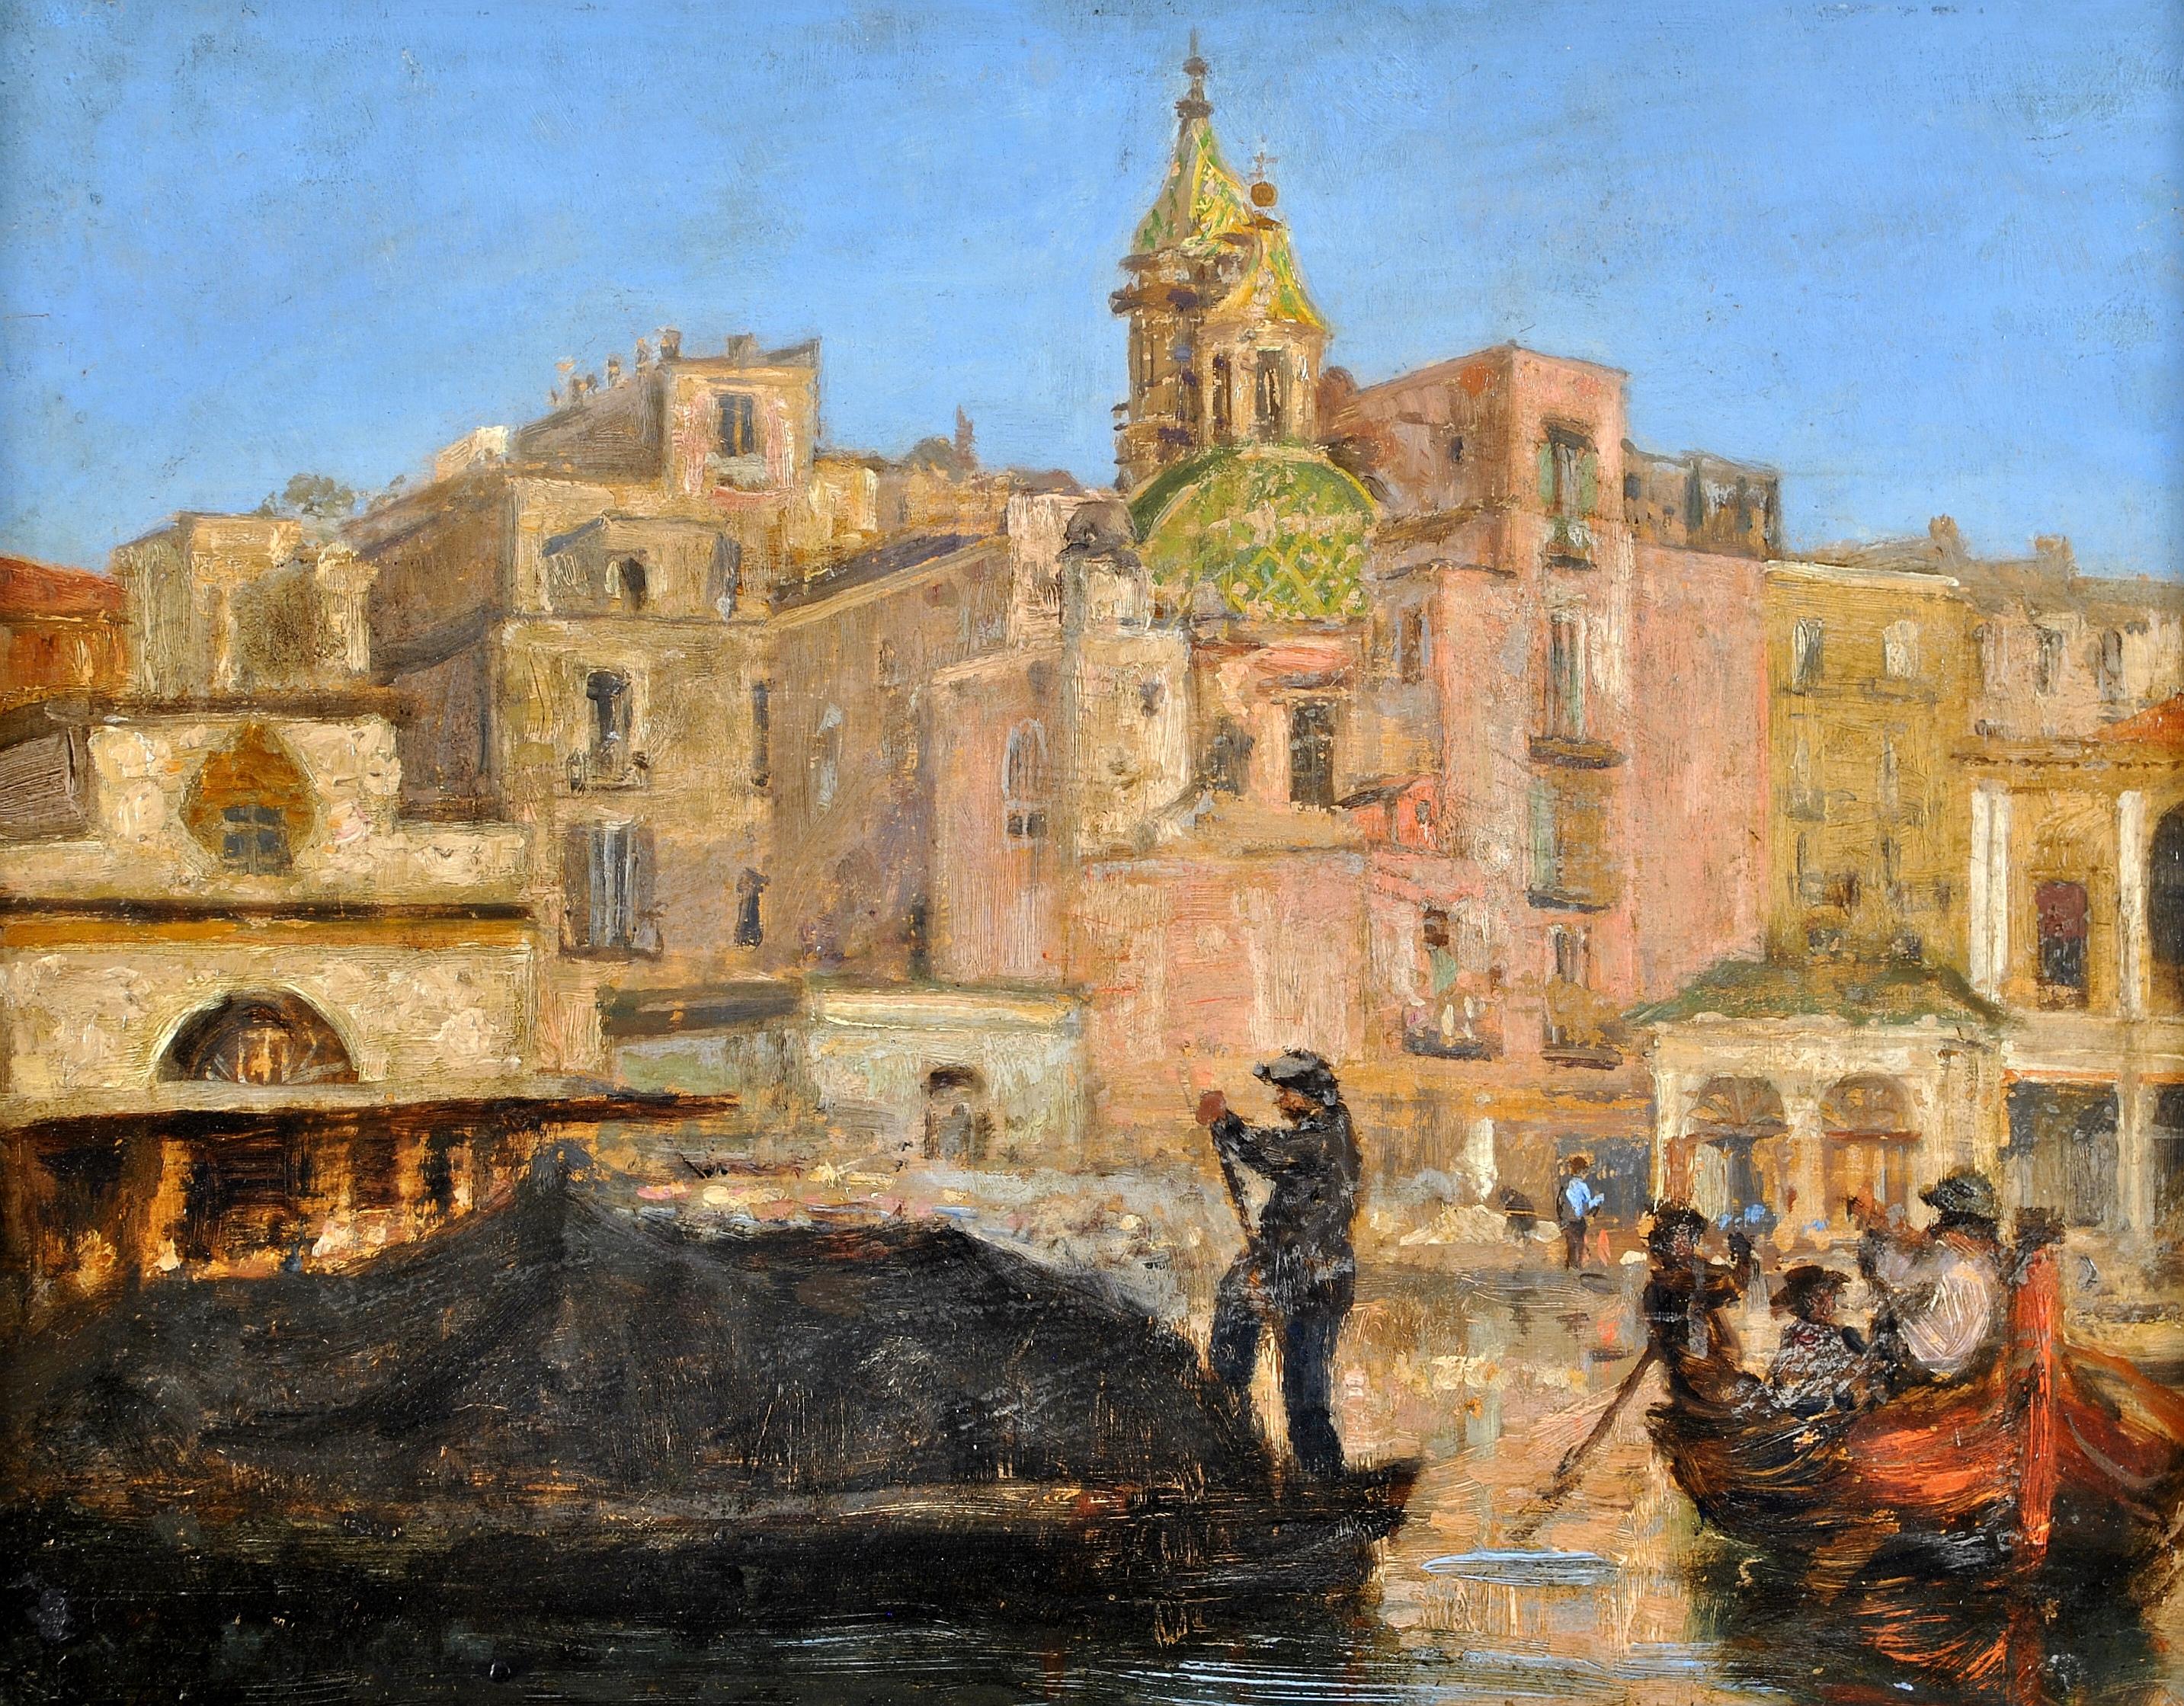 The Custom House, Naples - Peinture de paysage impressionniste moderne britannique en Italie - Painting de Bernard Sickert